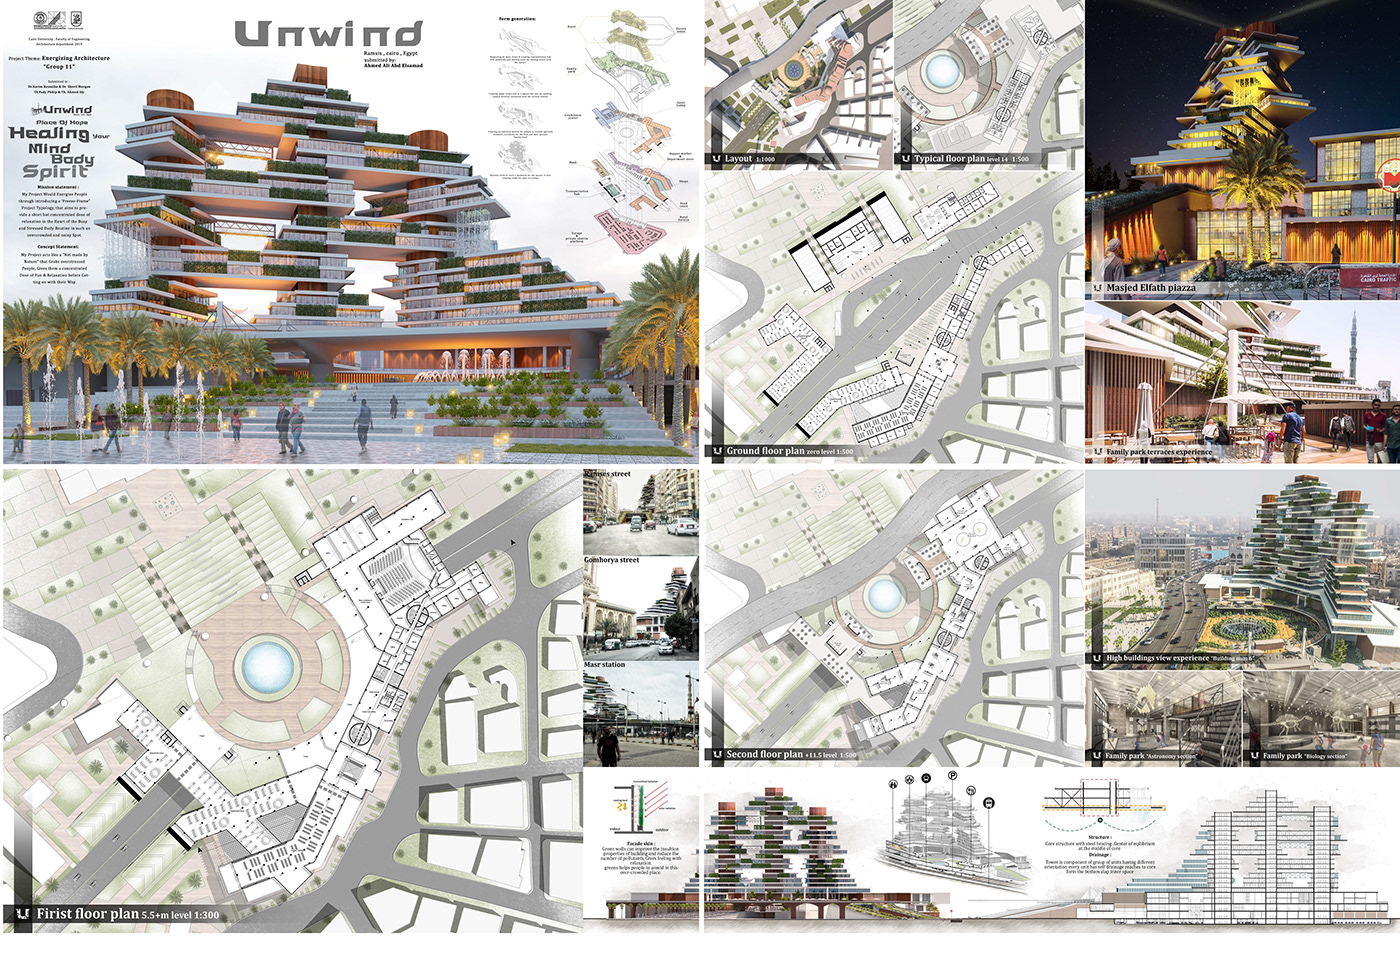 architecture Unwind square ramses egypt graduation family park Park Recreational visualize